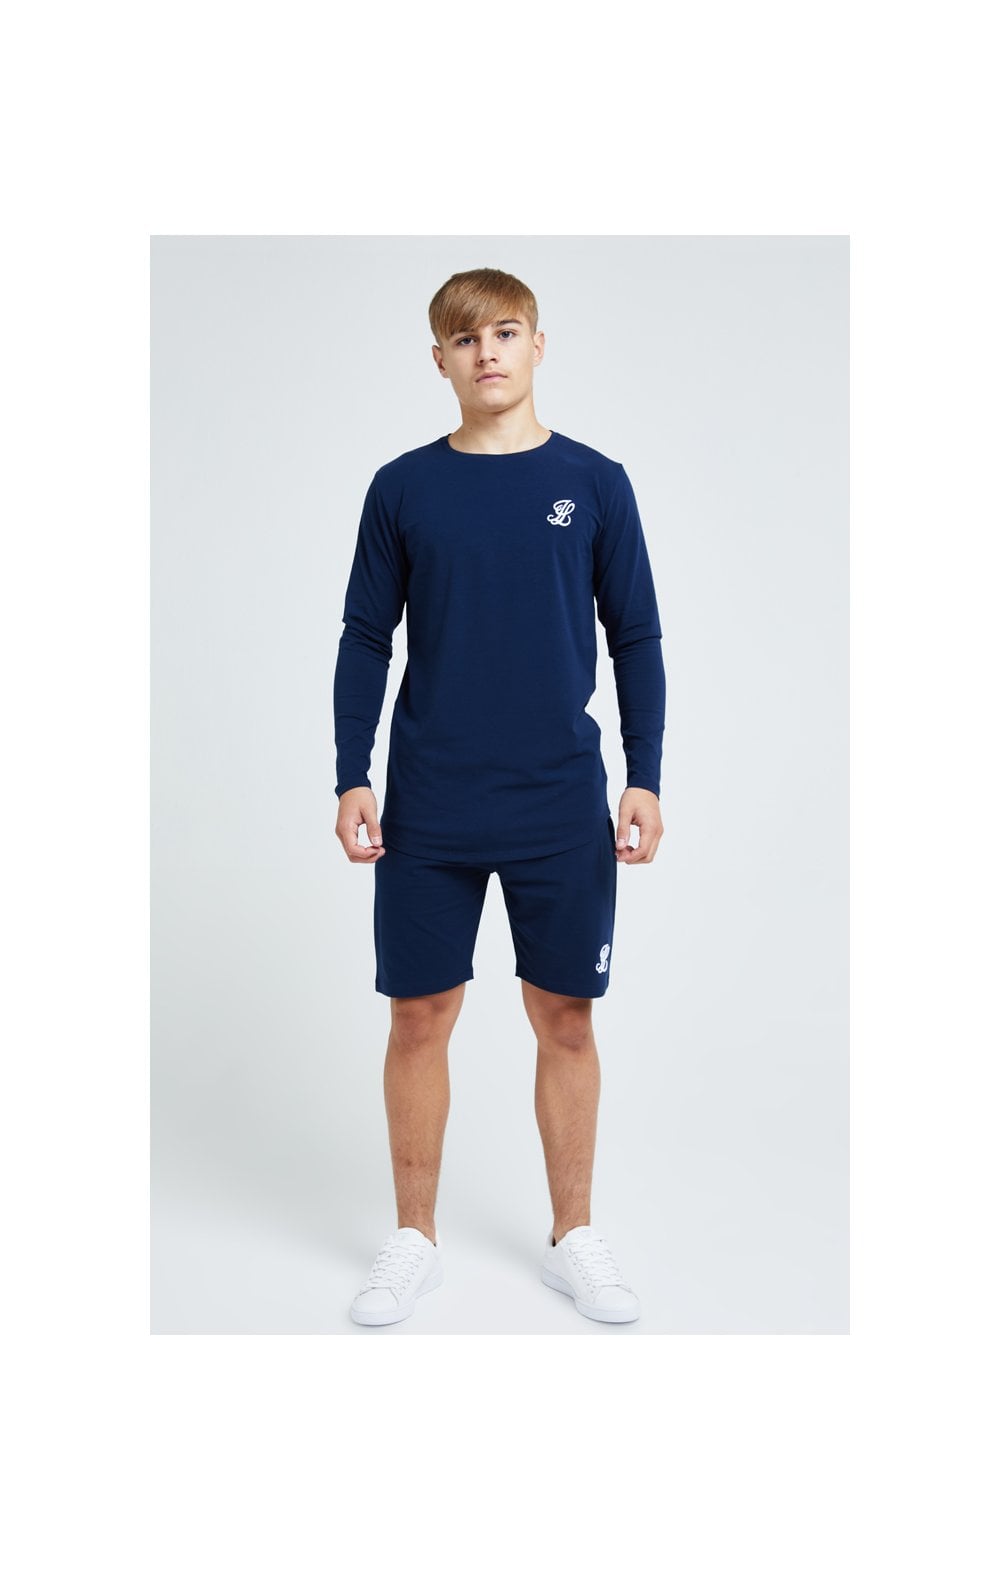 Illusive London Core Jersey Shorts - Navy (5)